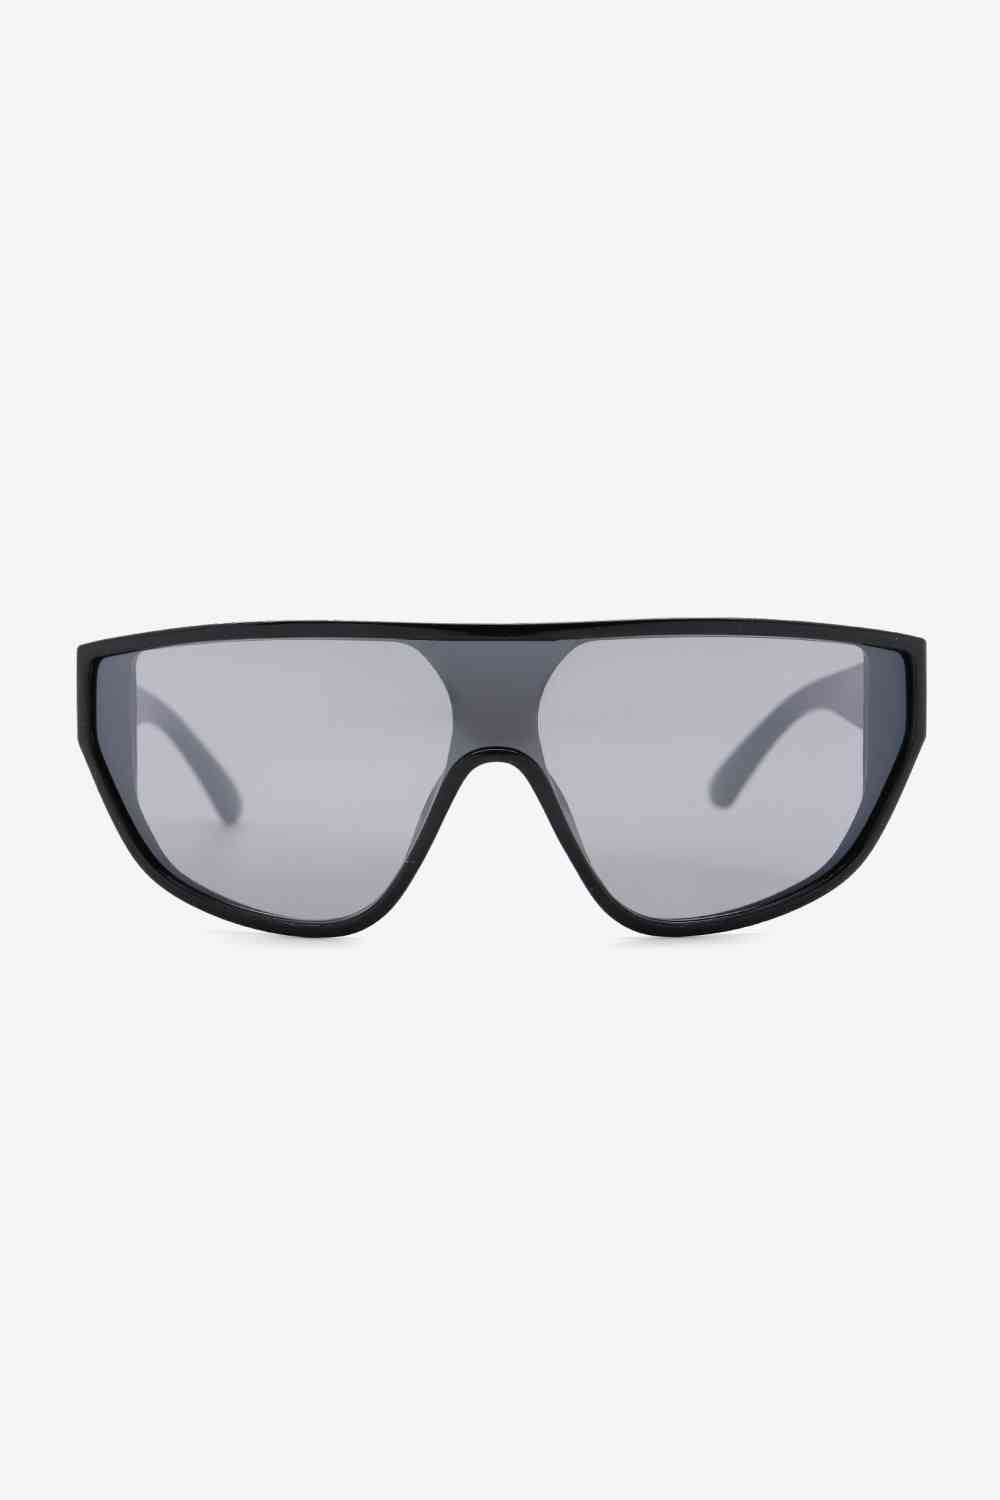 TEEK - Womens Wayfarer Sunglasses EYEGLASSES TEEK Trend   